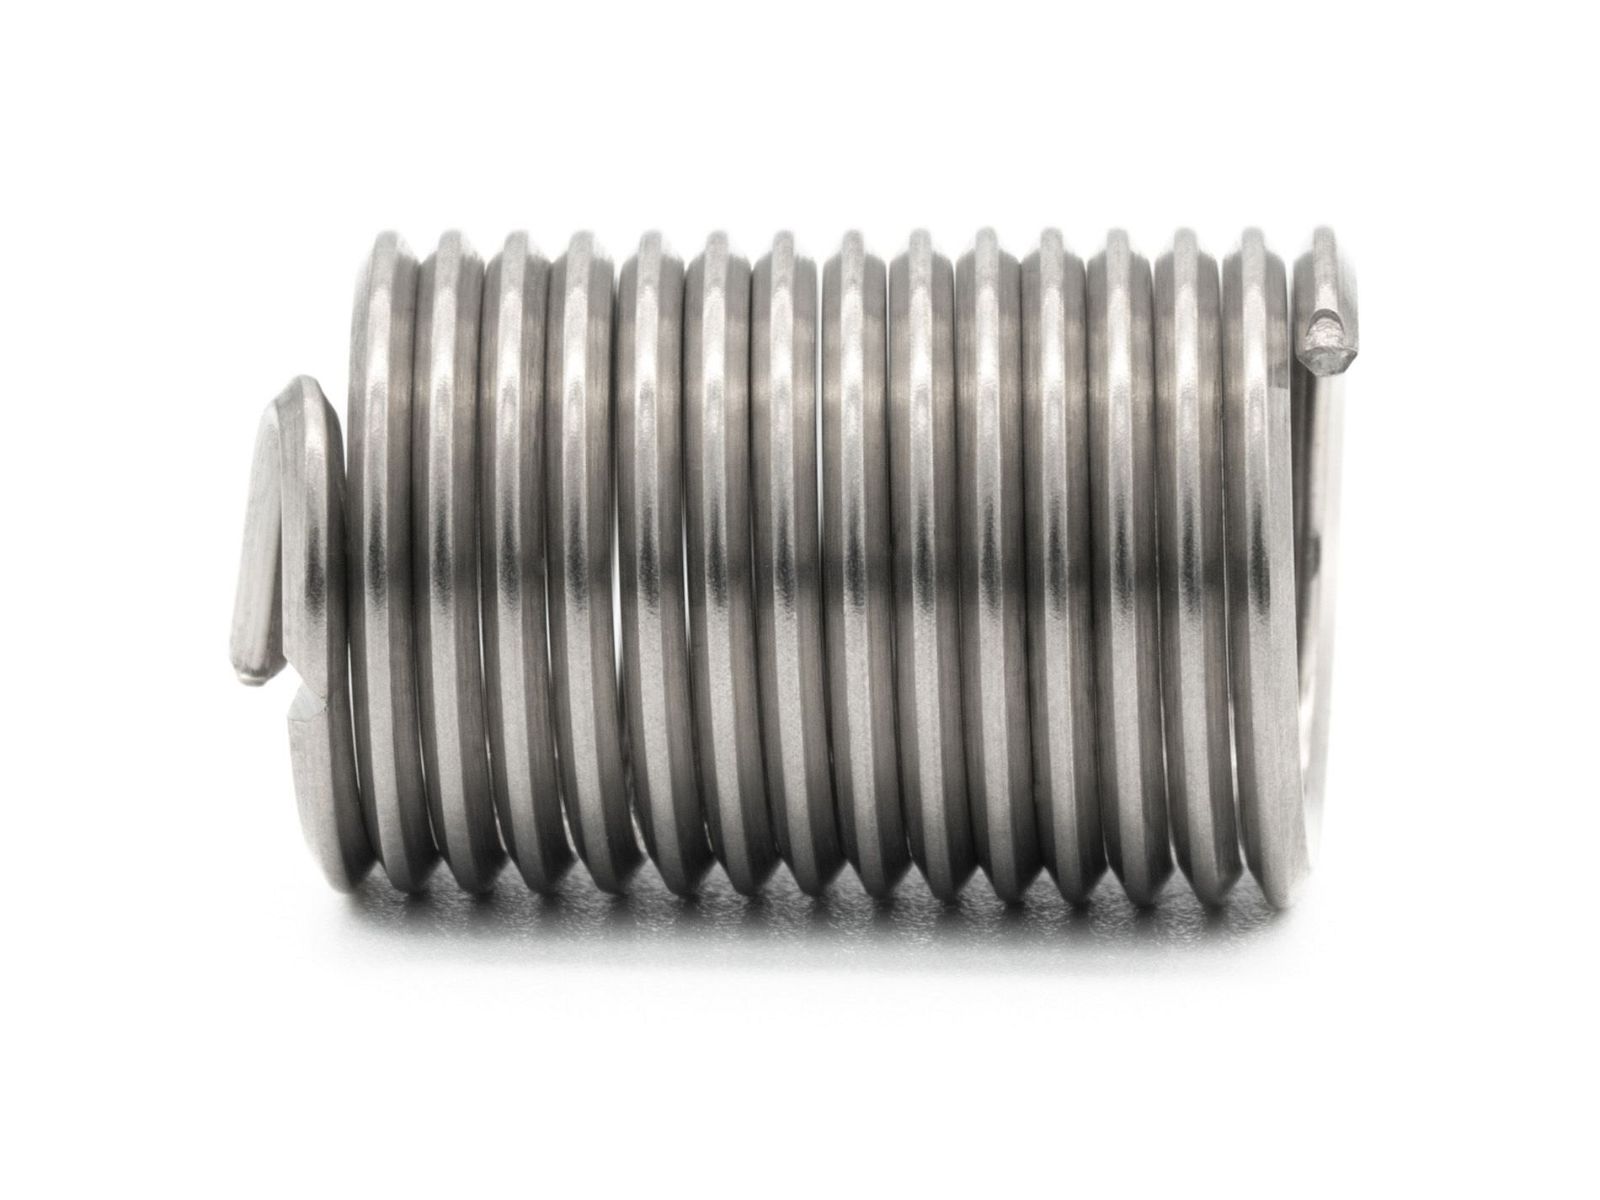 BaerCoil Wire Thread Inserts UNF 7/16 x 20 - 2.5 D (27.78 mm) - free running - 10 pcs.